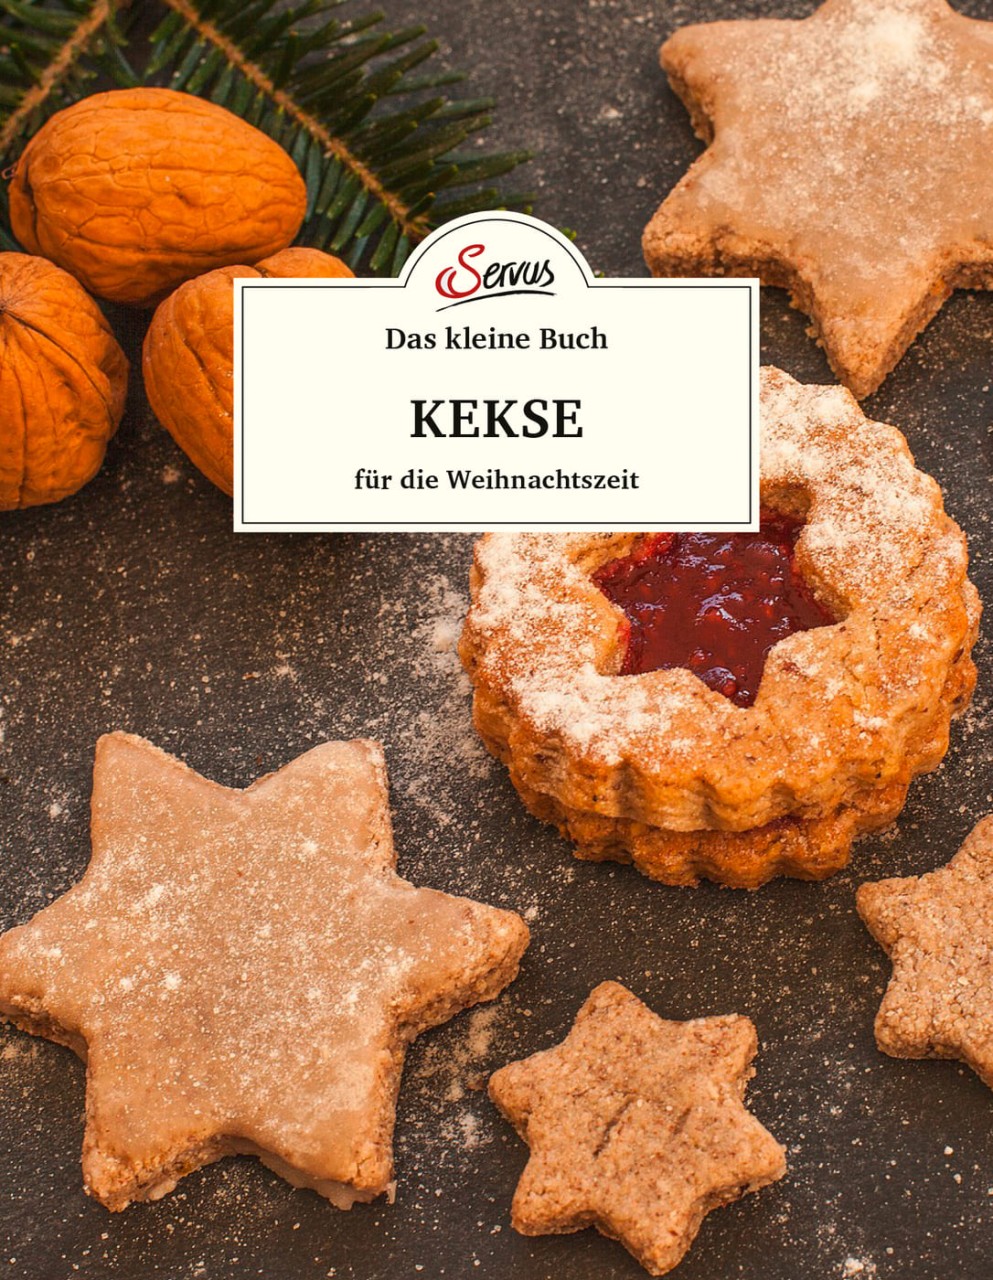 Das kleine Buch: Kekse für die Weihnachtszeit von Servus Verlag